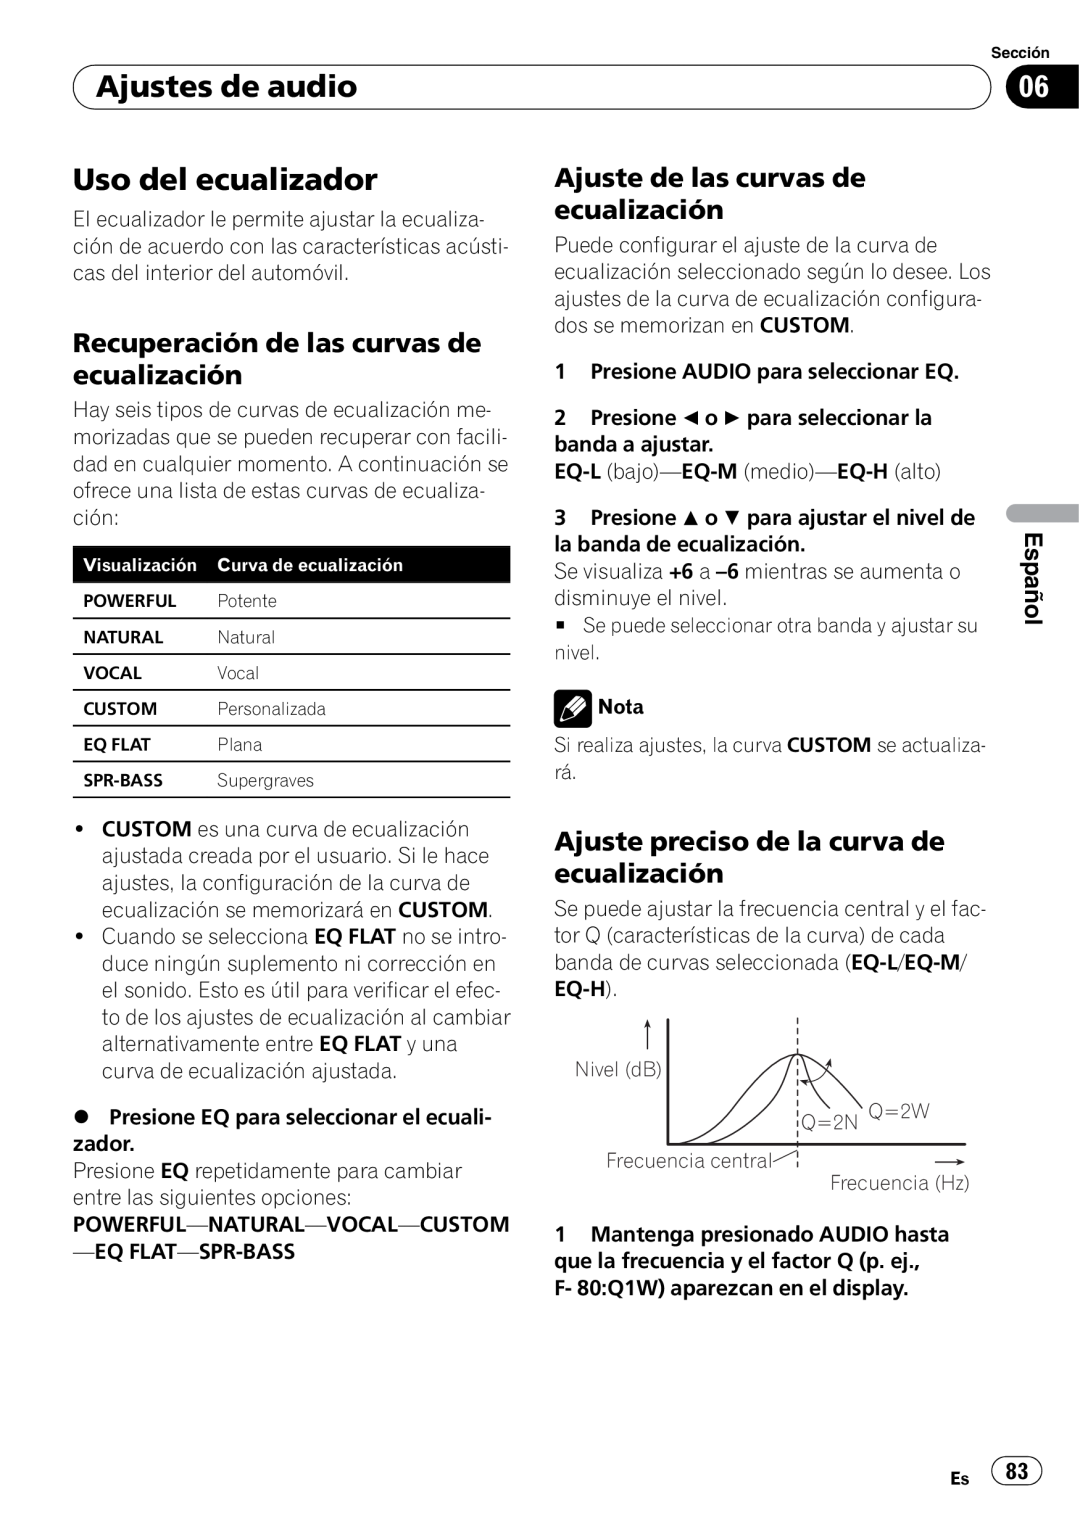 Sony DEH-P2900MP Ajustes de audio, Uso del ecualizador, Recuperación de las curvas de ecualización, Español 